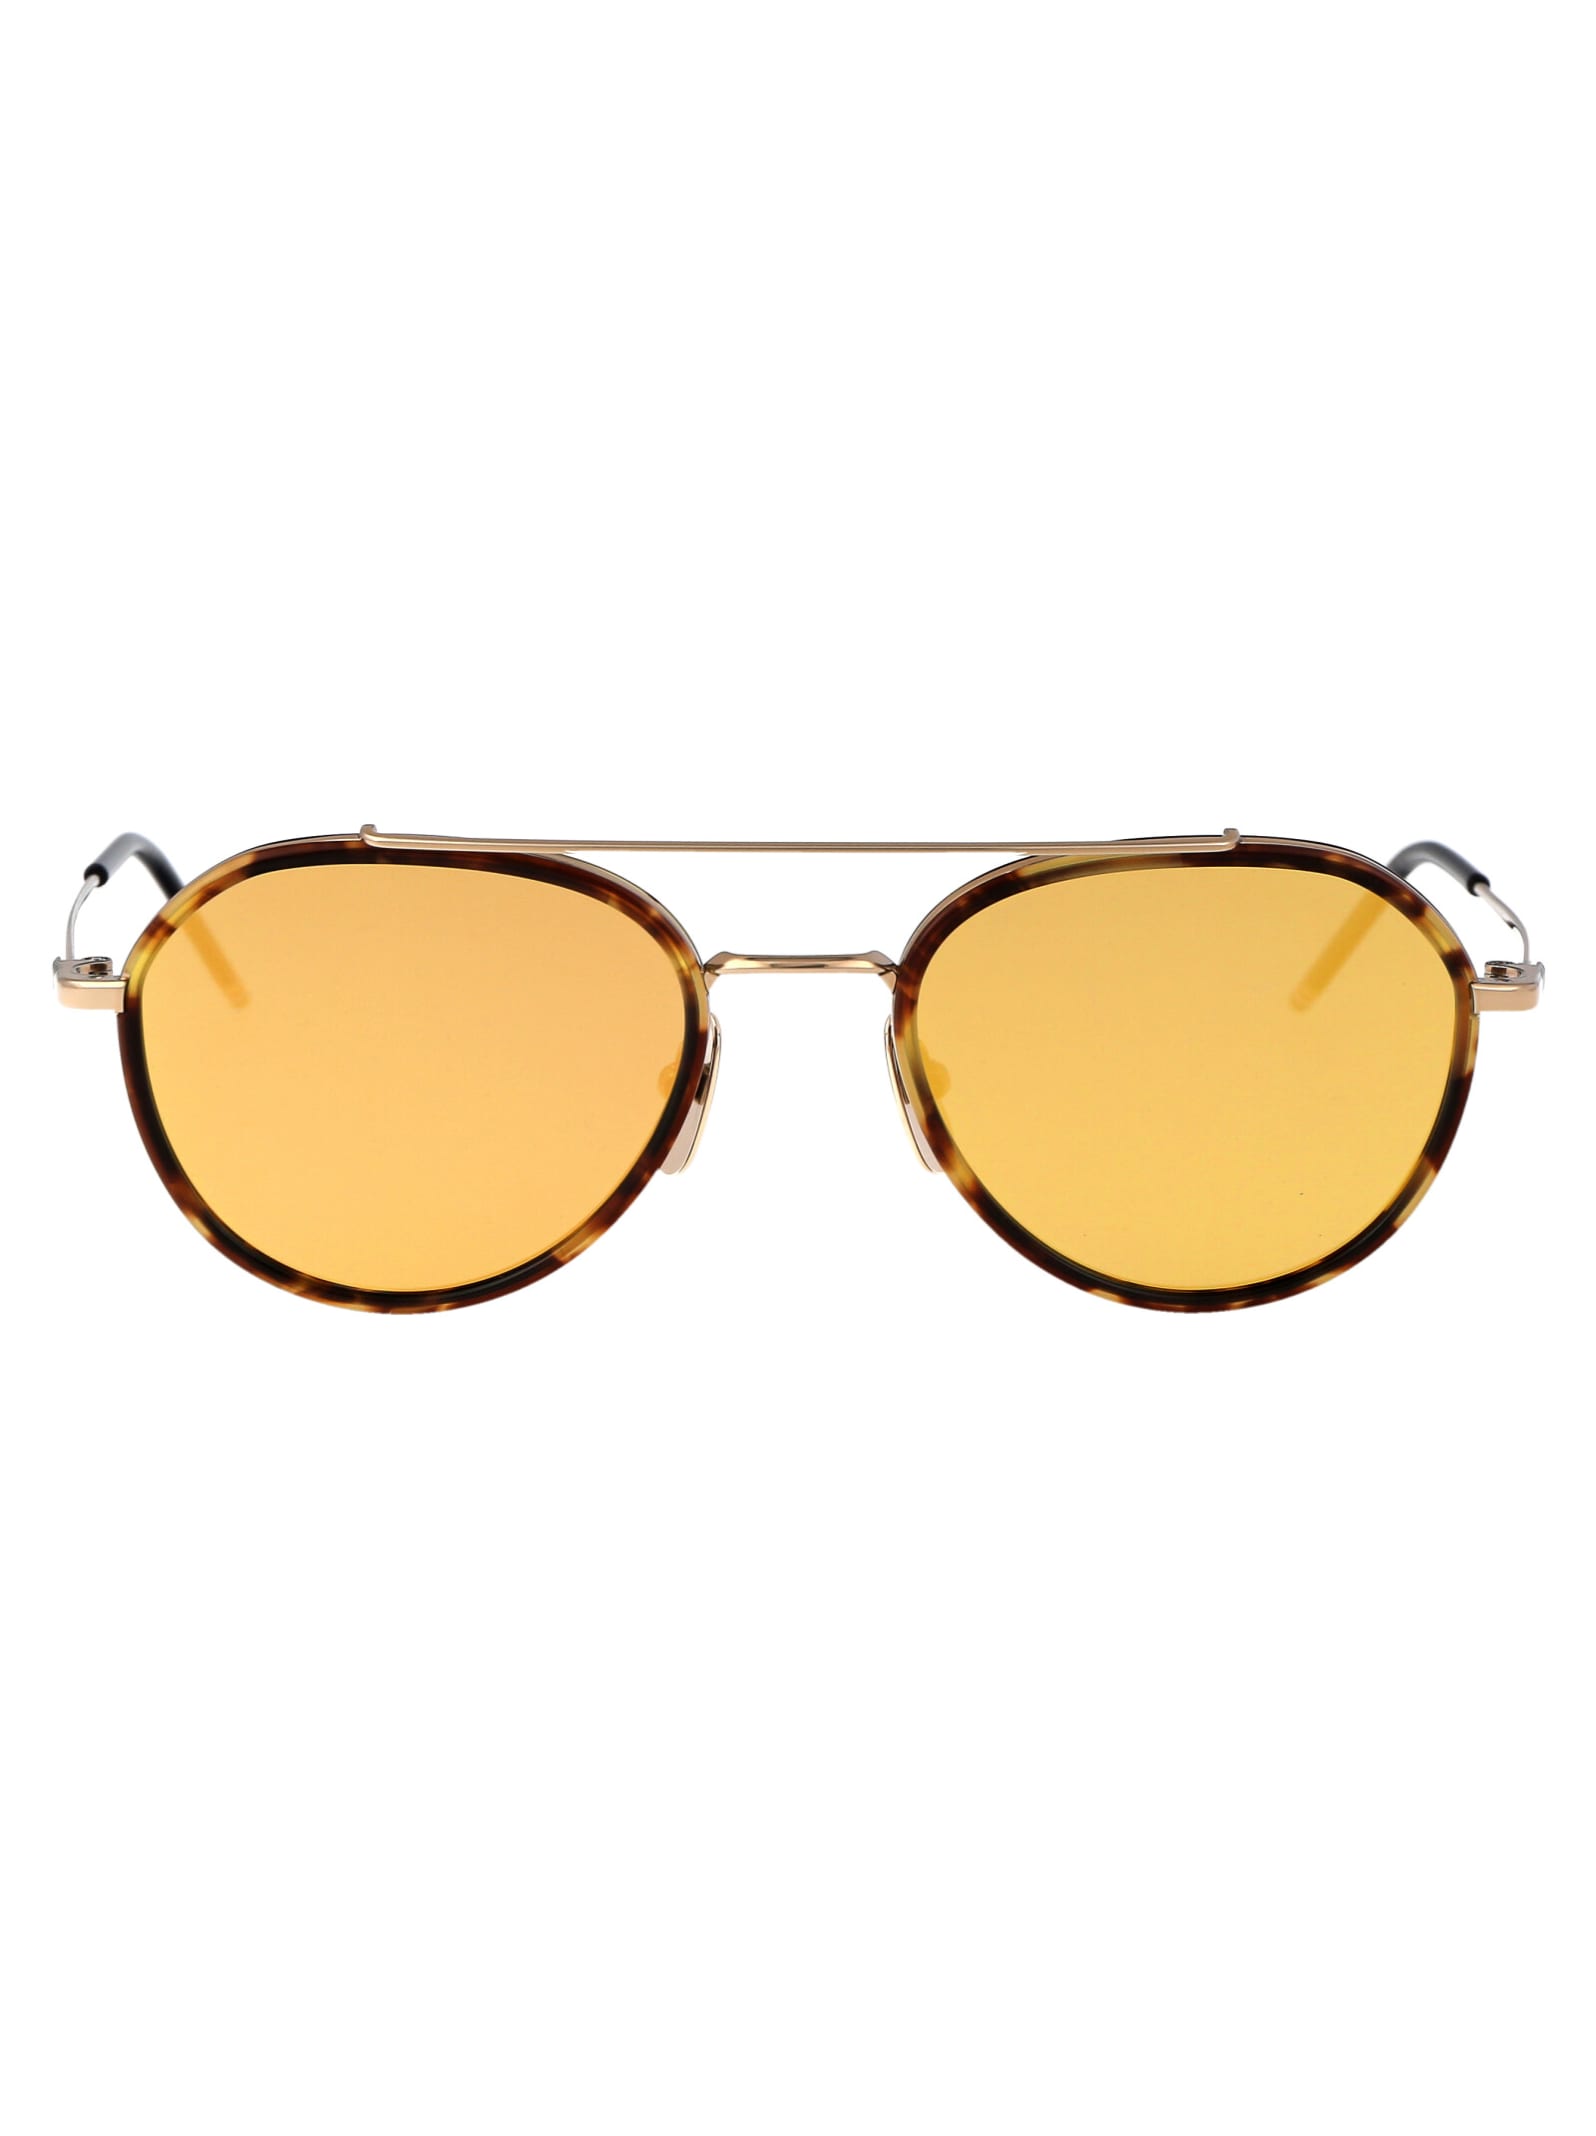 Ues801a-g0003-215-51 Sunglasses